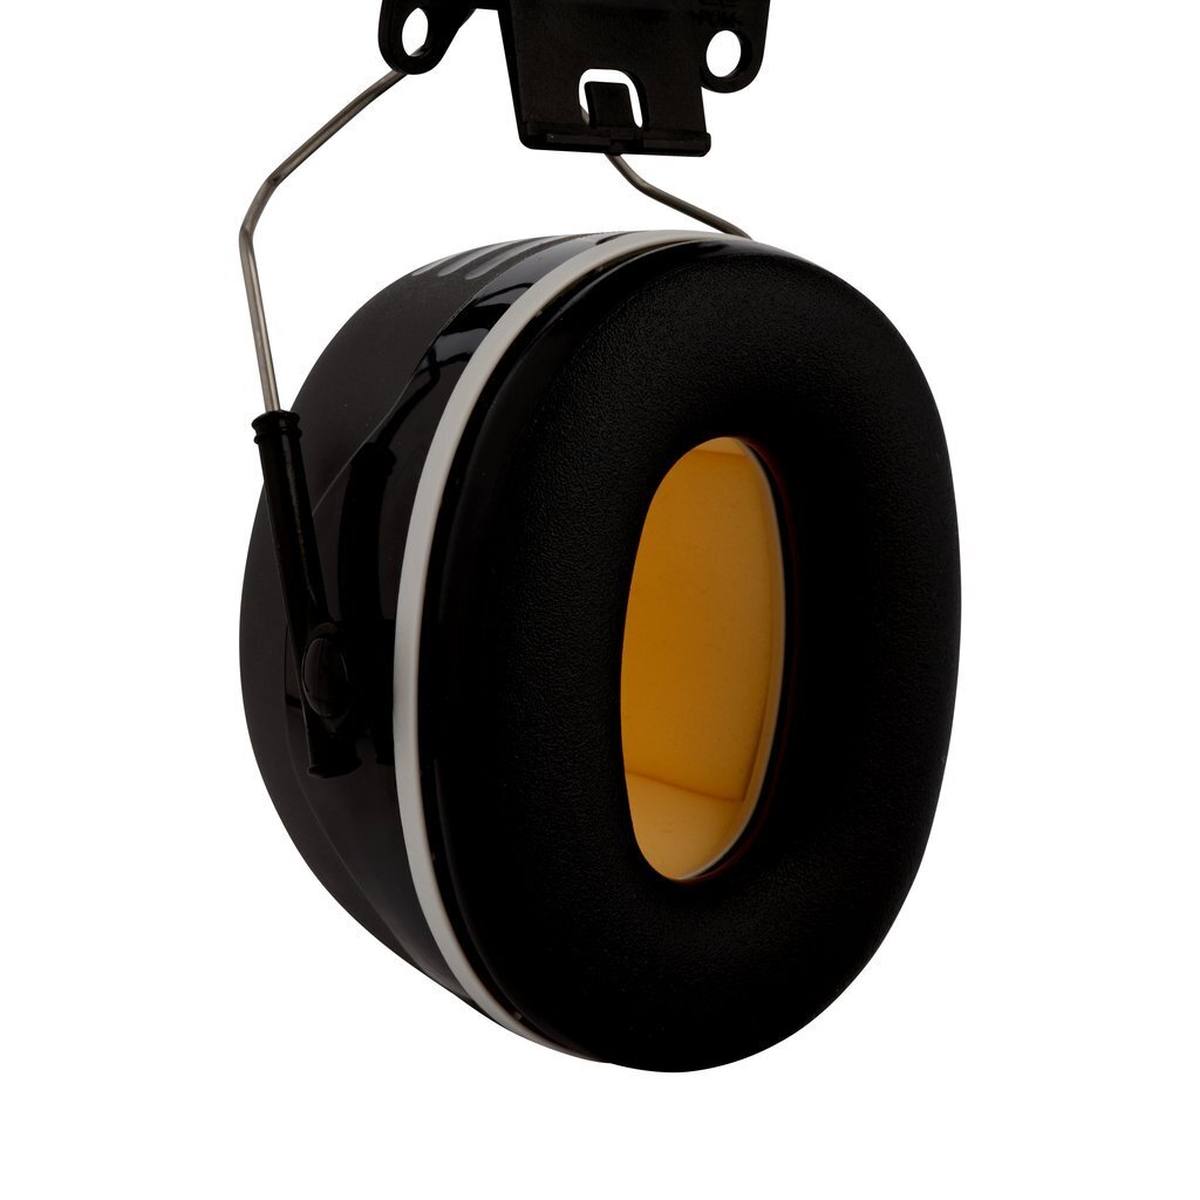 3M Peltor casque antibruit, X5P3E fixation sur casque, noir, SNR = 36 dB avec adaptateur de casque P3E (pour tous les casques 3M, sauf G2000)